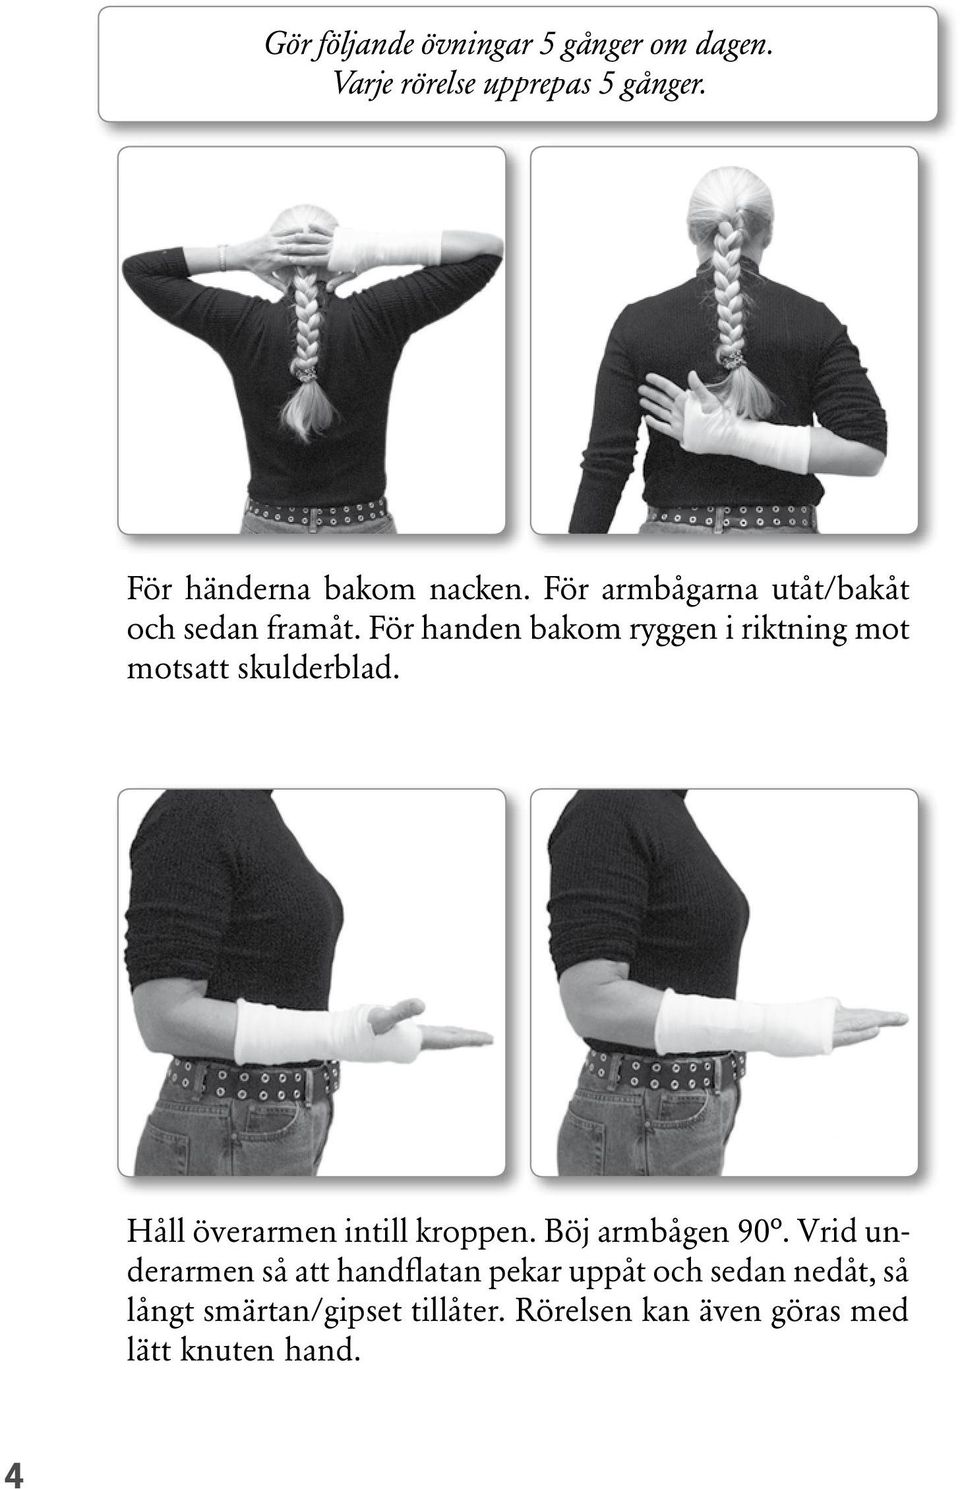 För handen bakom ryggen i riktning mot motsatt skulderblad. Håll överarmen intill kroppen.